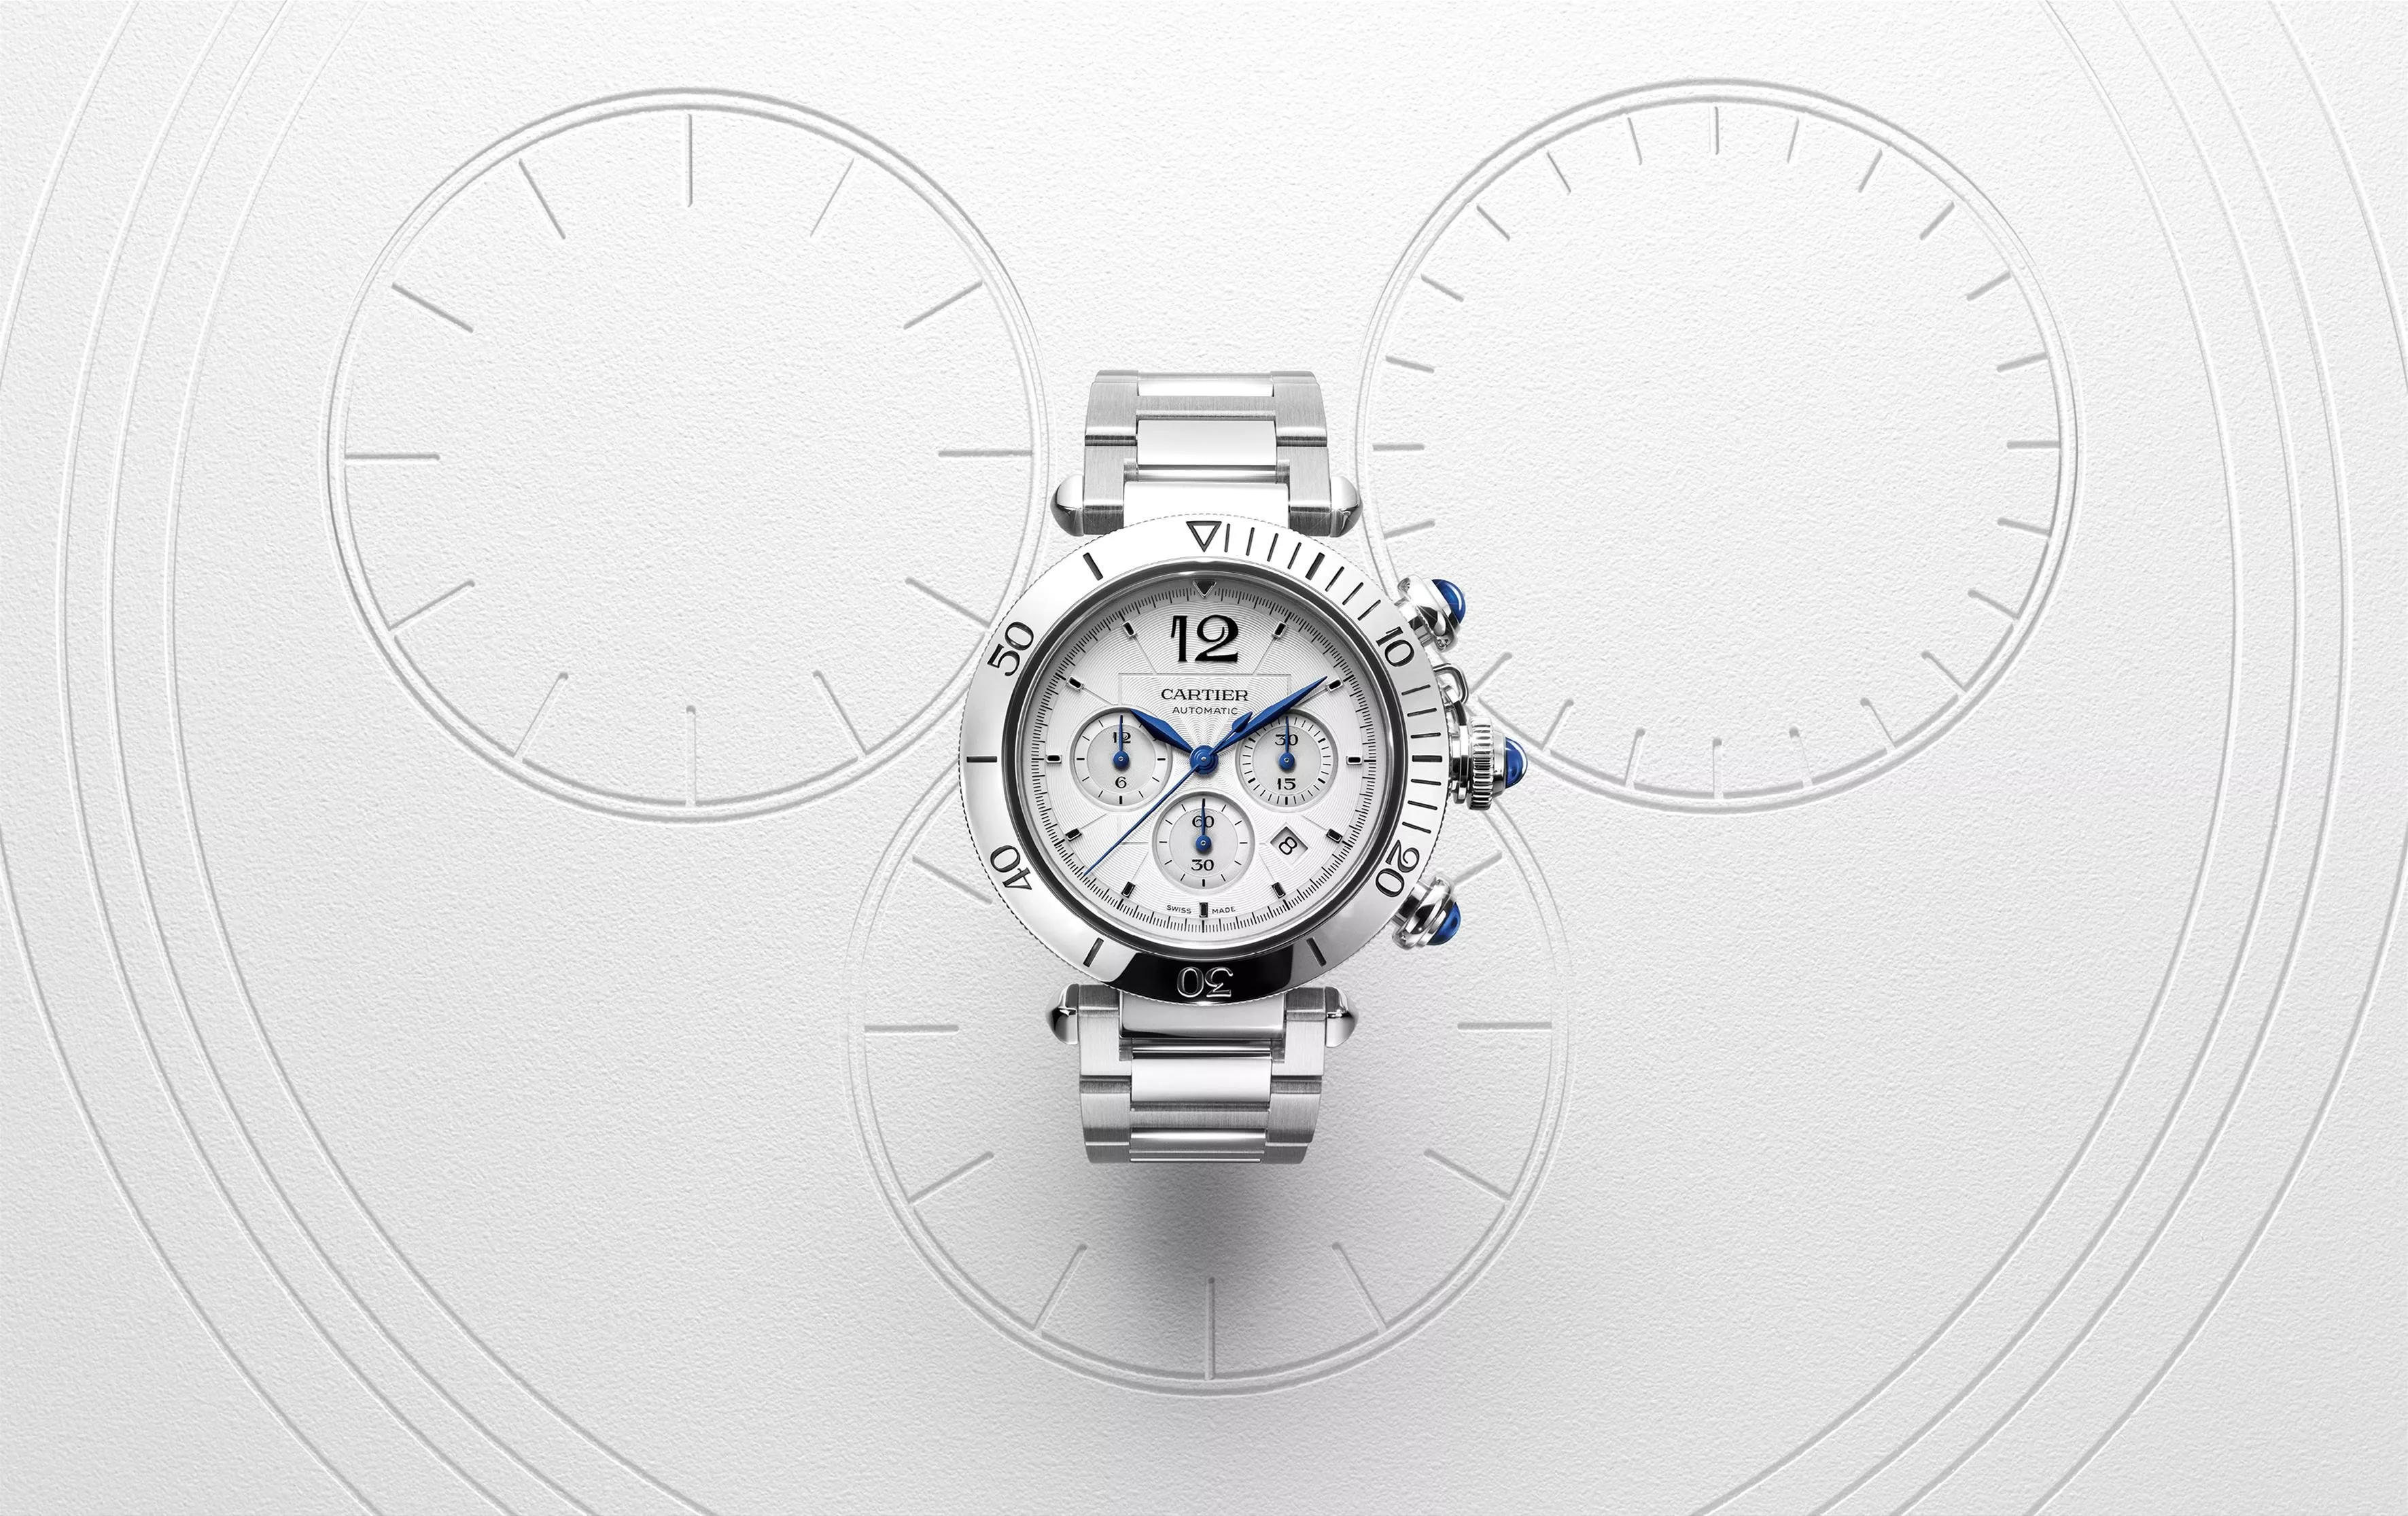 دار Cartier تشارك في معرض Watches & Wonders 2021  وتقدّم أشهر الساعات لديها